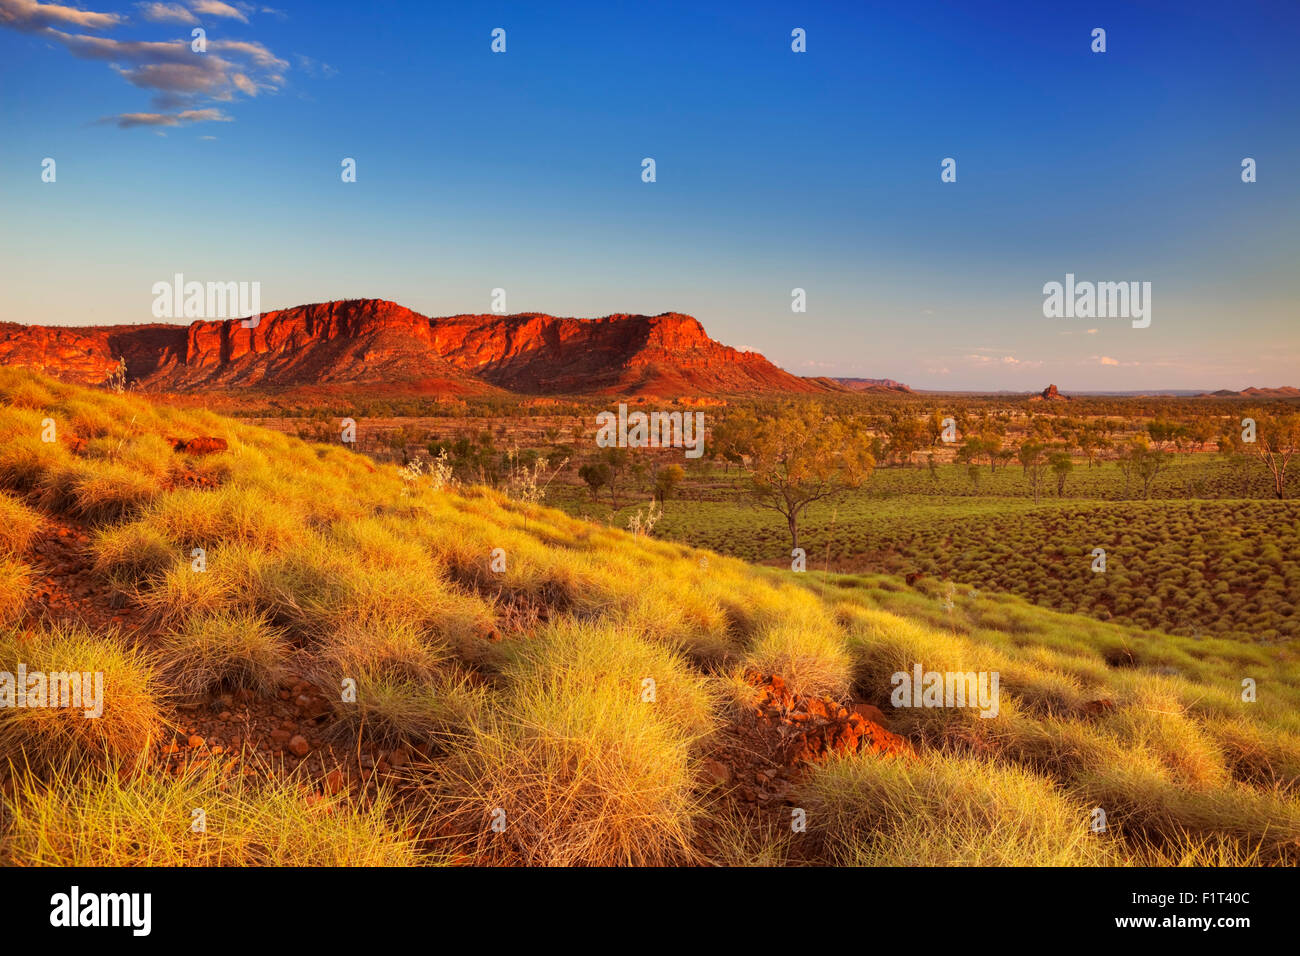 Australische Landschaft im Licht der untergehenden Sonne. Fotografiert von der Kungkalahayi Suche im Purnululu National P Stockfoto